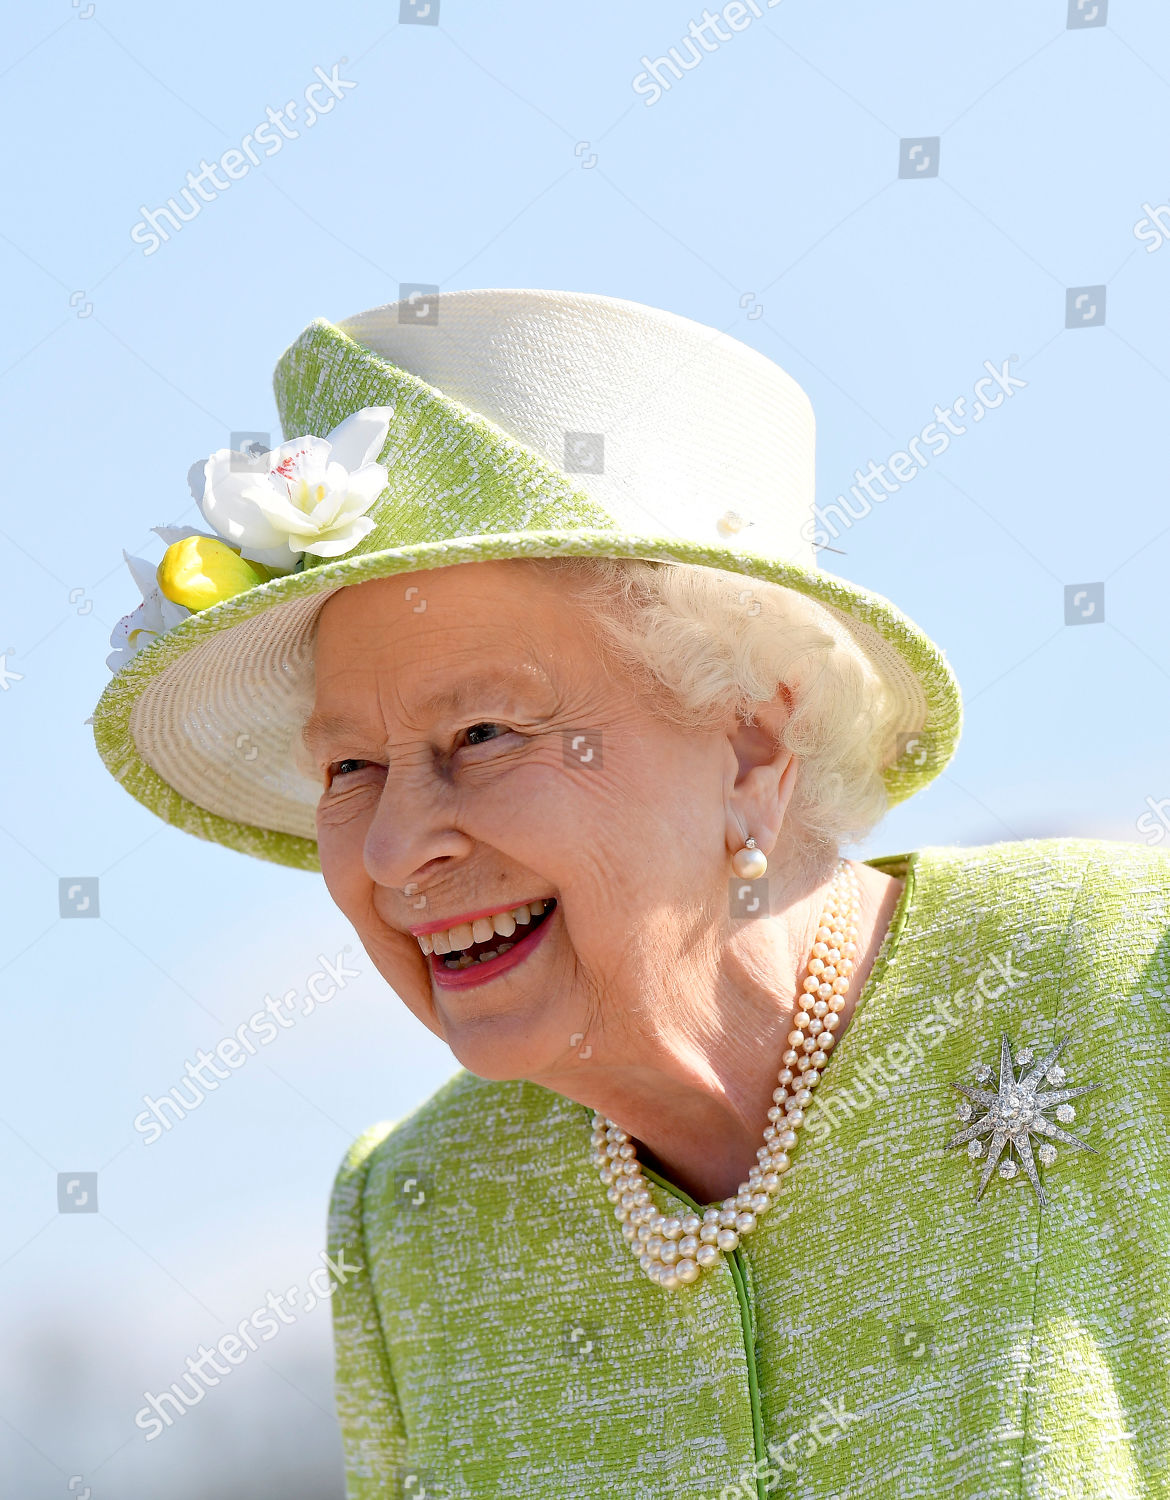 queen-elizabeth-visit-to-somerset-uk-shutterstock-editorial-10180760d.jpg